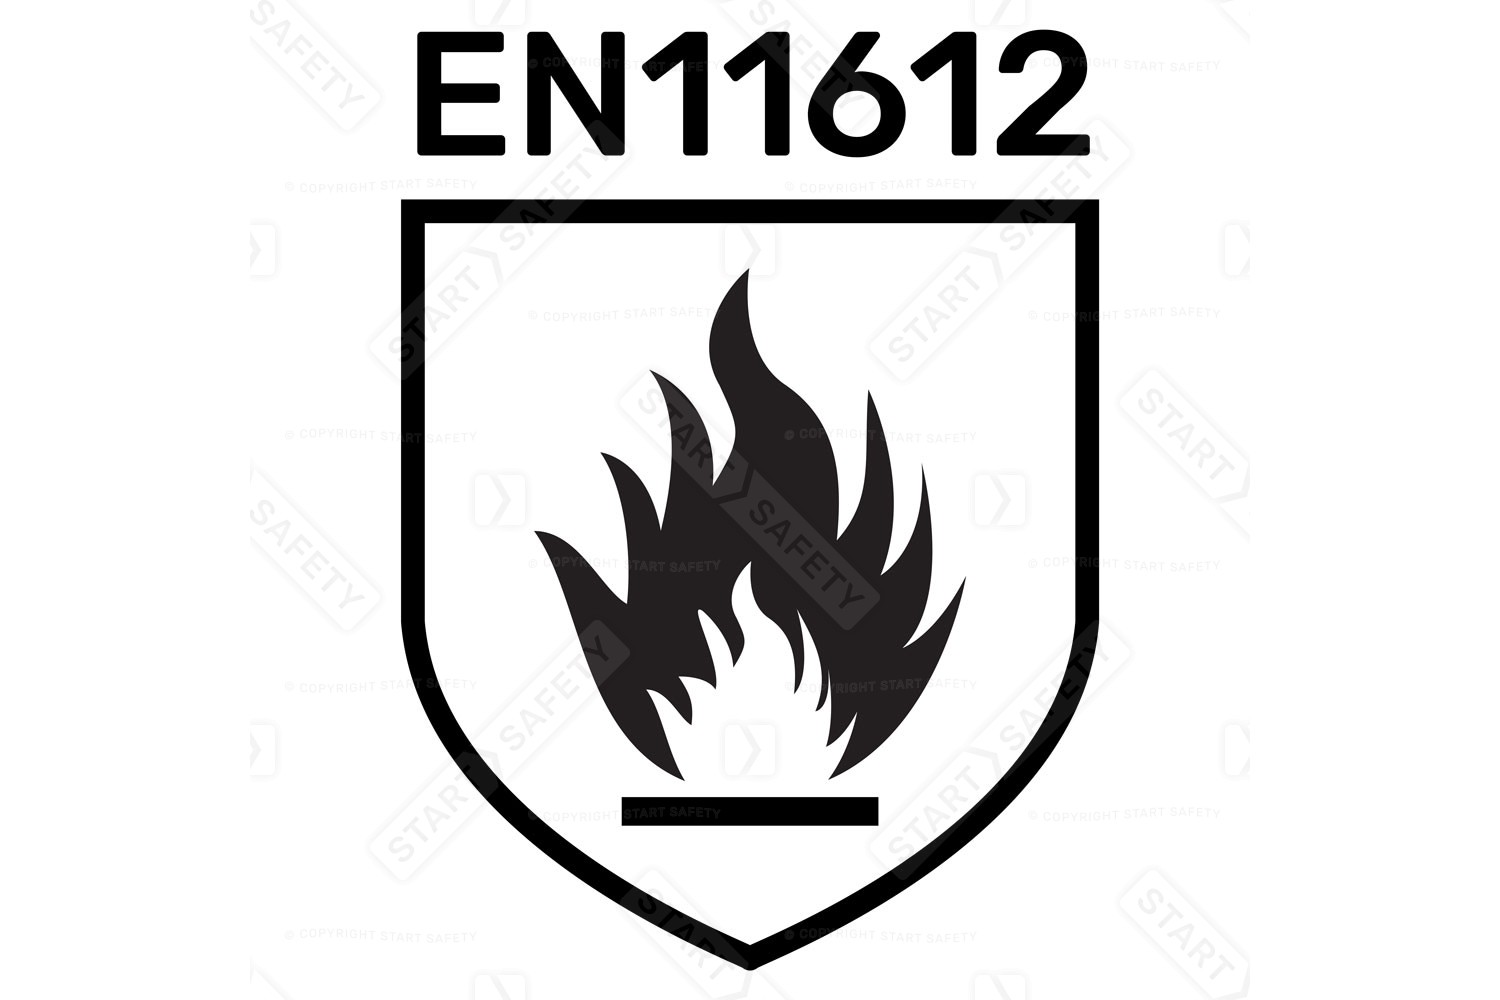 EN11612 Flame Retardance Symbol